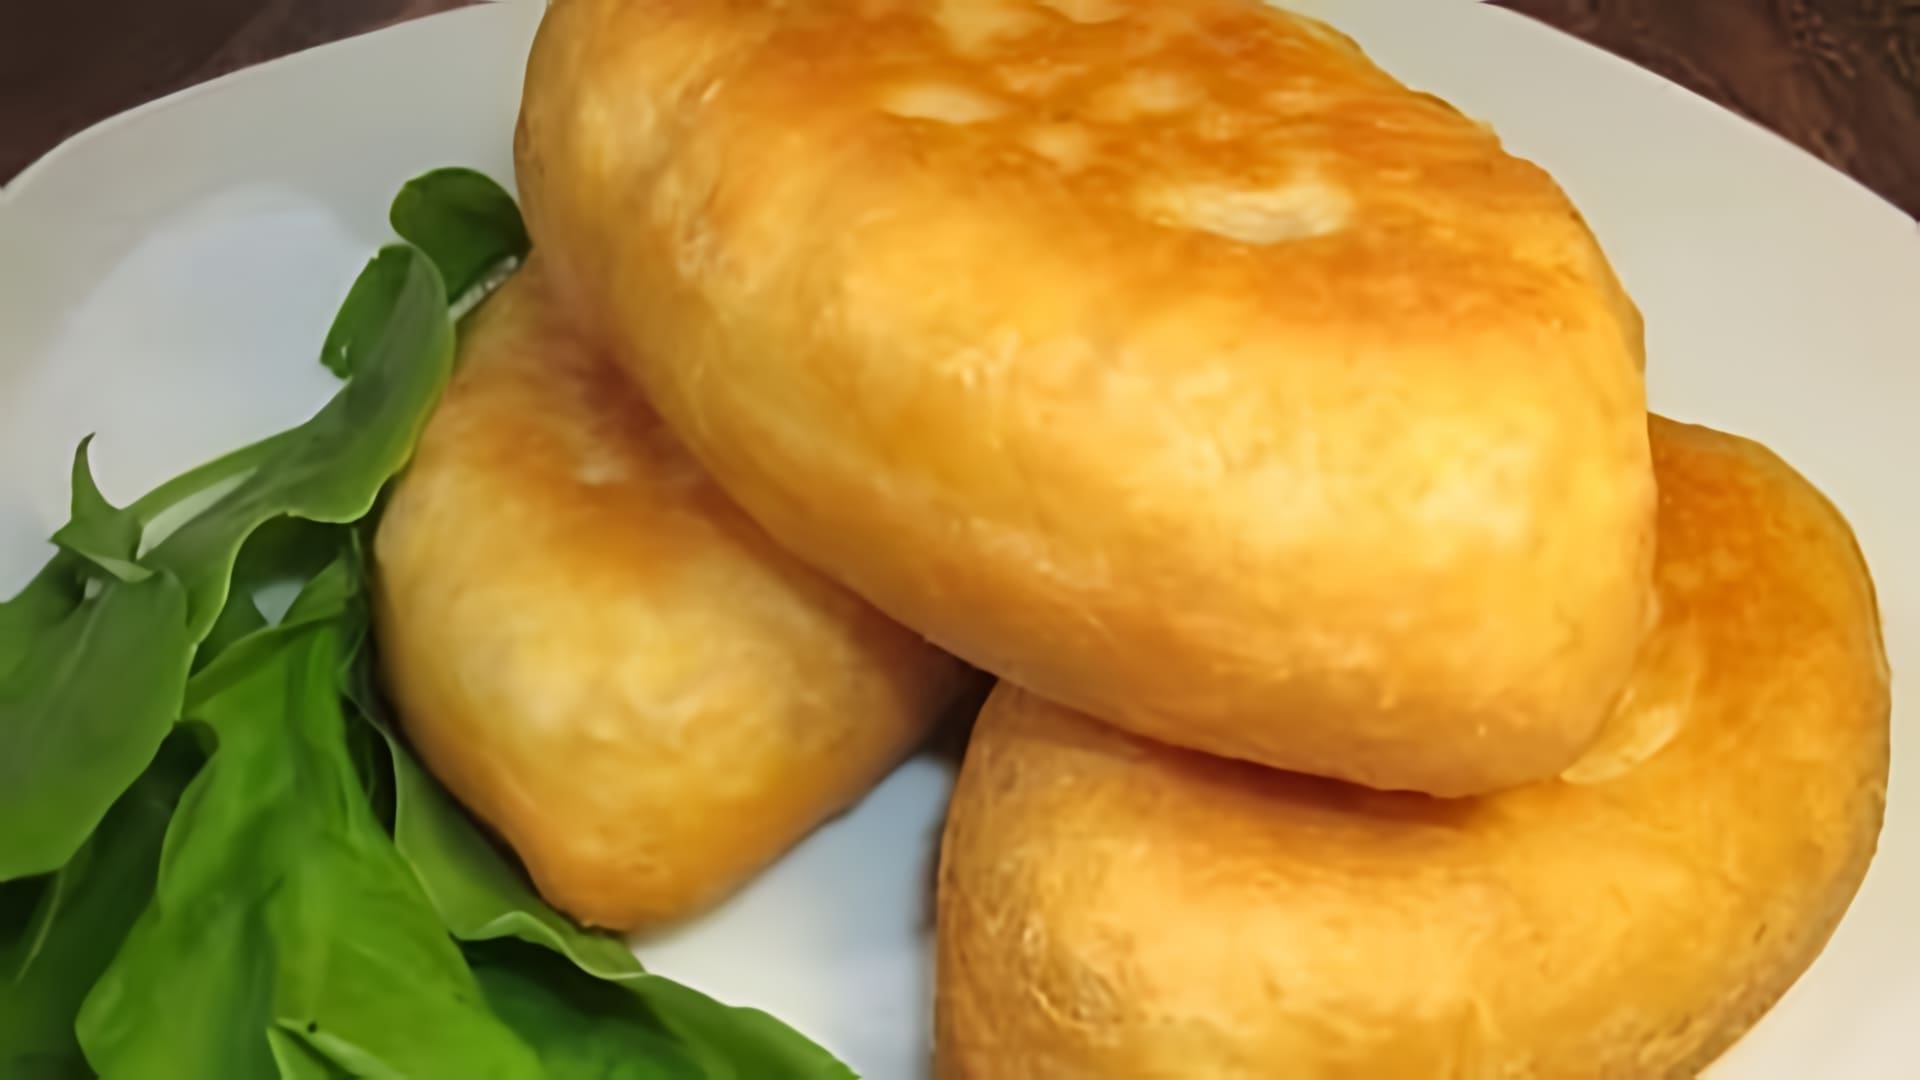 В этом видео демонстрируется рецепт приготовления пирожков со щавелем на кефире